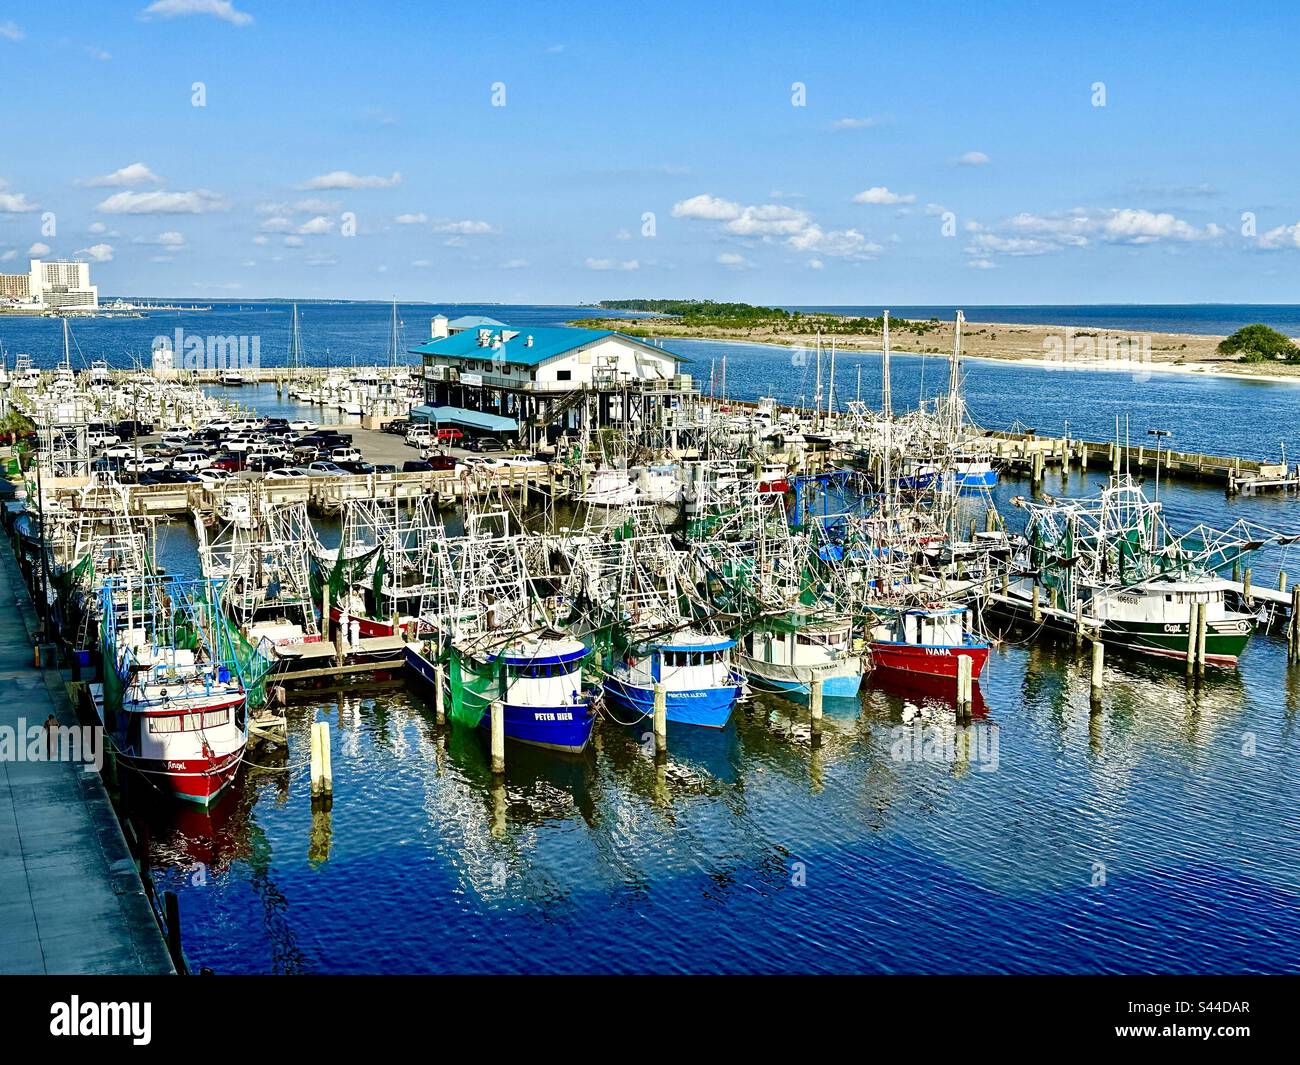 Der Biloxi Small Craft Harbor ist der älteste Hafen in Biloxi, MS. Direkt neben dem Hard Rock Casino in der Innenstadt von Biloxi gelegen Stockfoto